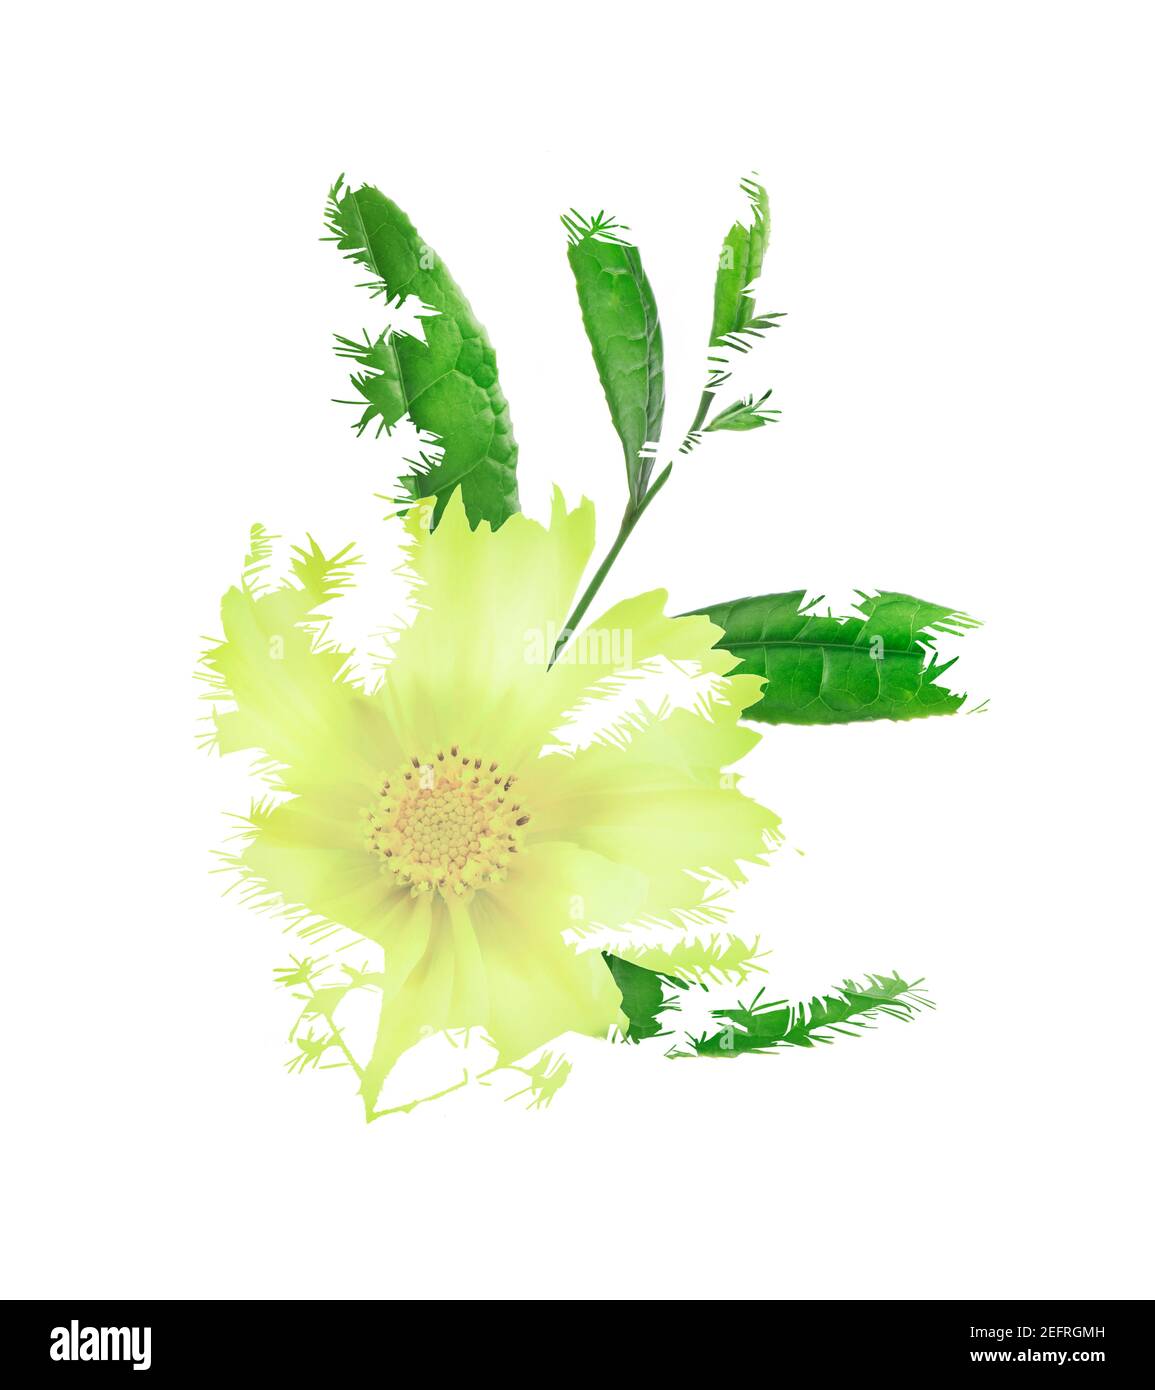 Composition florale abstraite de la fleur jaune Cosmos et des feuilles vertes isolées sur fond blanc. Image de la nature artistique en double exposition. Banque D'Images